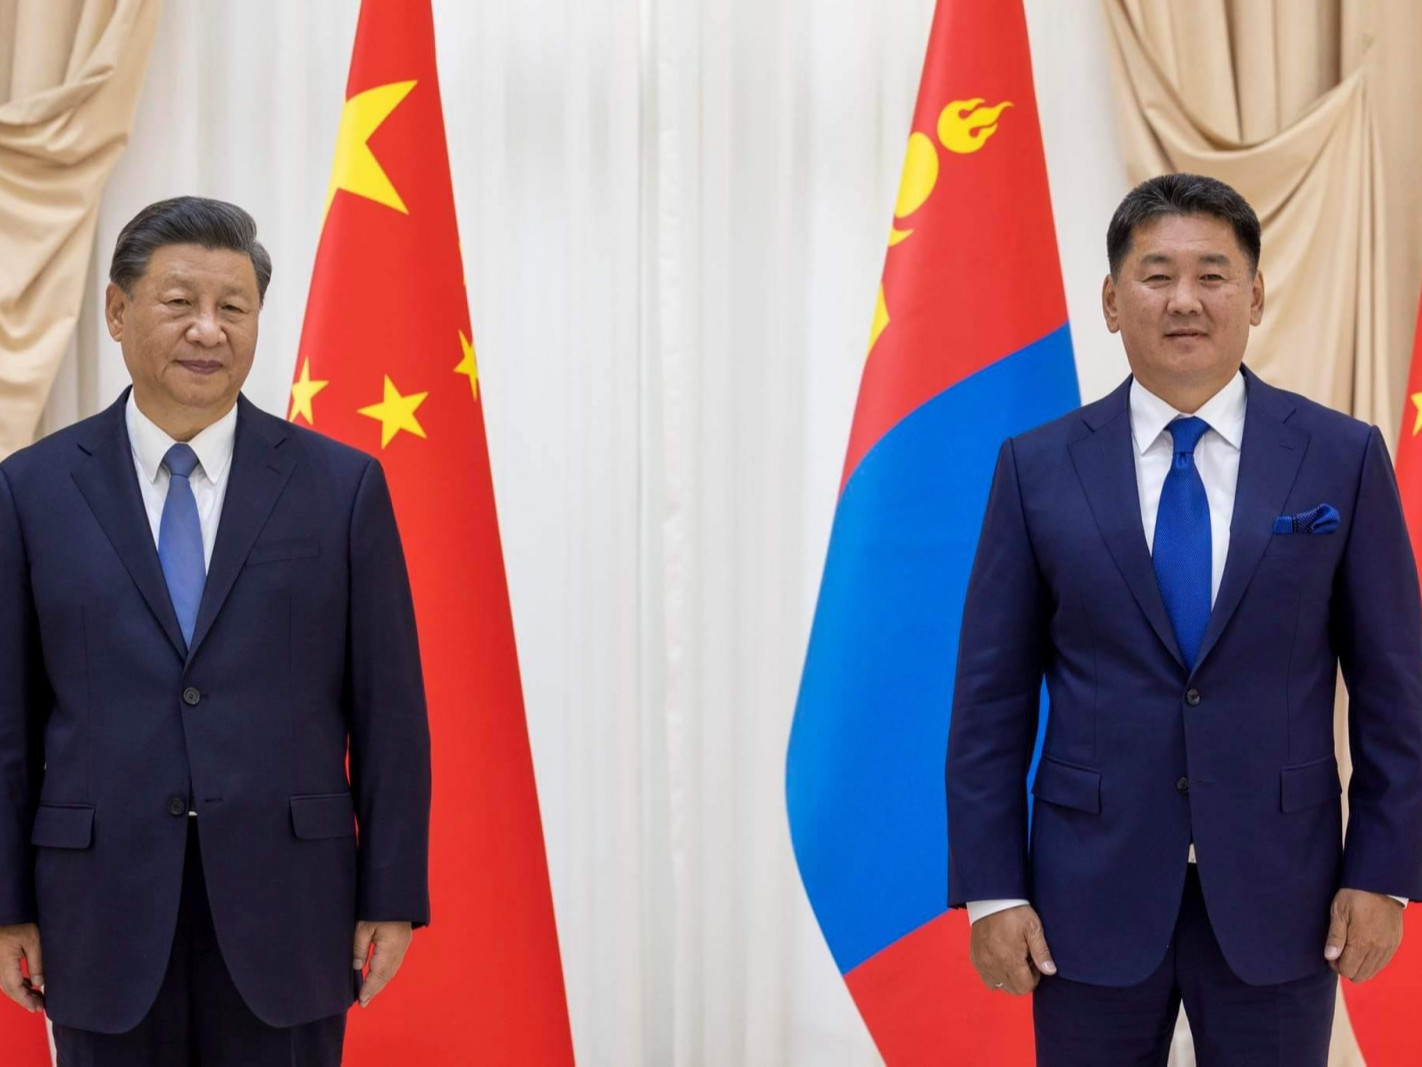 БИДНИЙ ТУХАЙ: Ши Жиньпин өөрийн холбоотон МУ-ын ерөнхийлөгч У.Хүрэлсүх тэргүүтэй удирдагчдыг ар араас нь Хятадад урьж байна